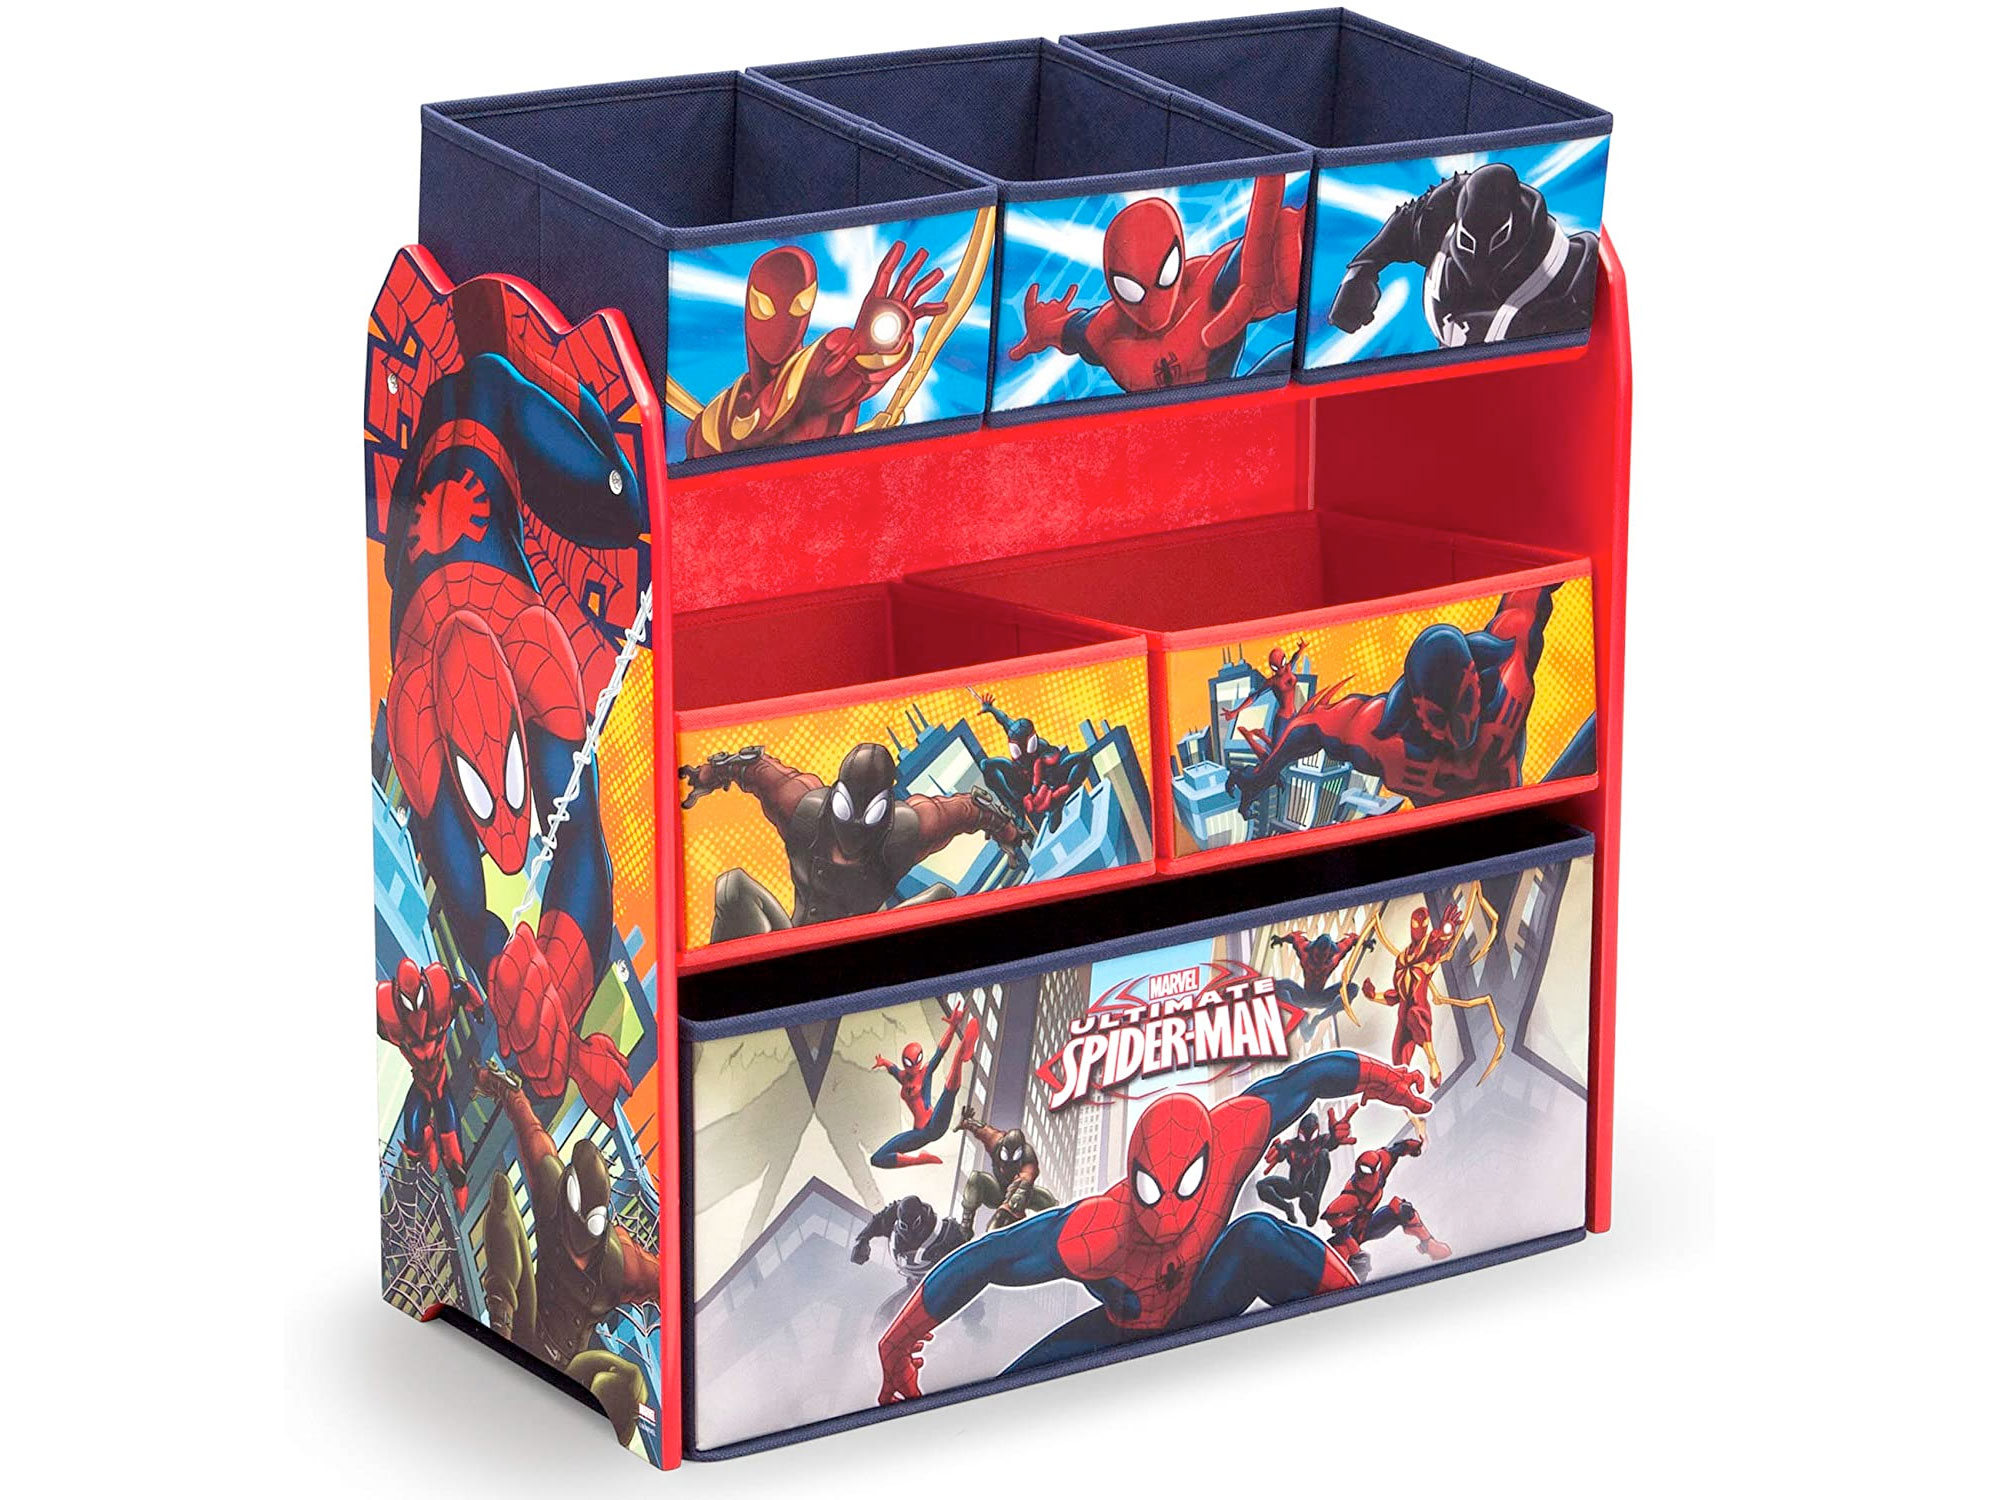 Amazon：Spider-Man 6-Bin Toy Storage Organizer只賣$37.97